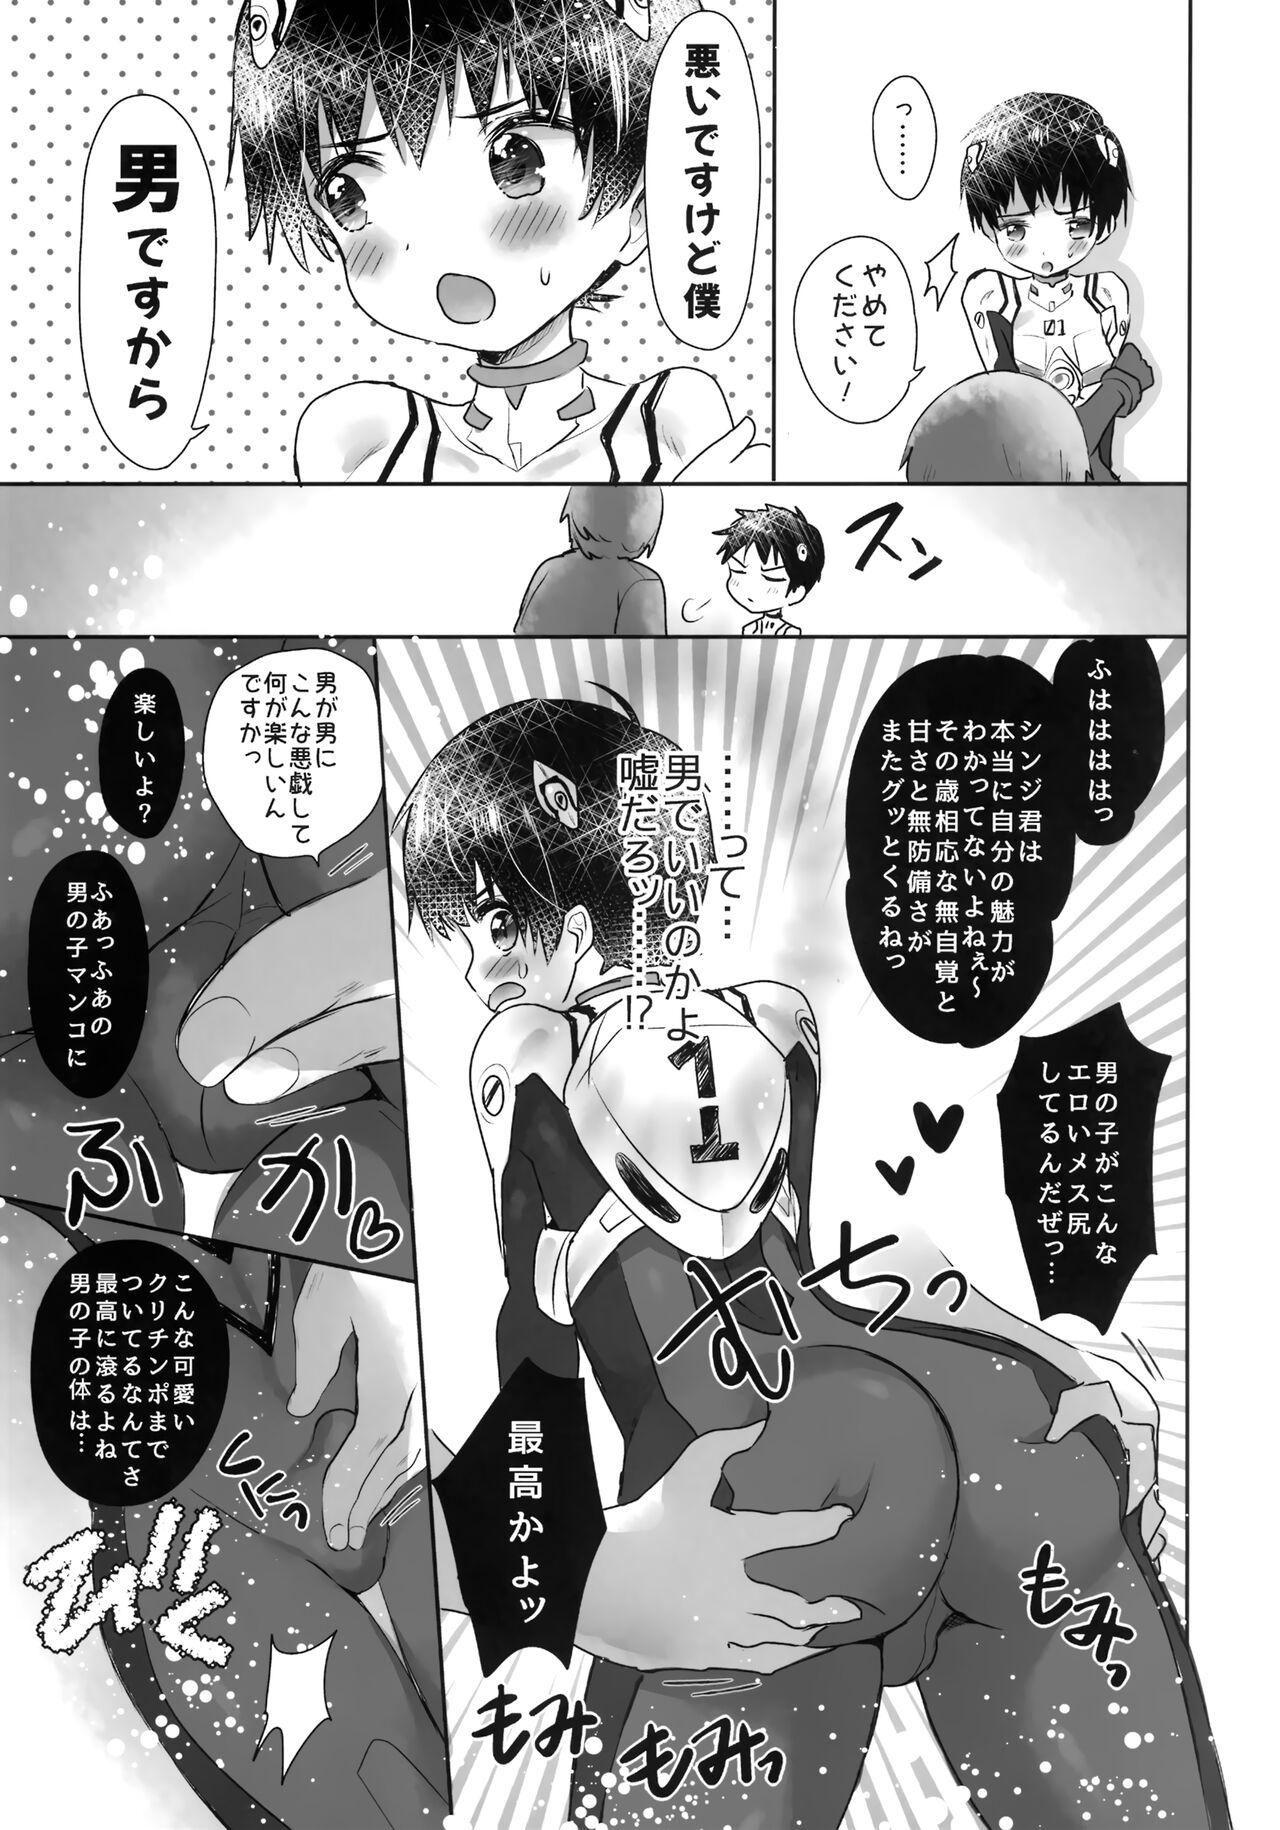 Hardsex Plugsuit o Kita Mama Notte Kure, Shinji. - Neon genesis evangelion Wam - Page 6